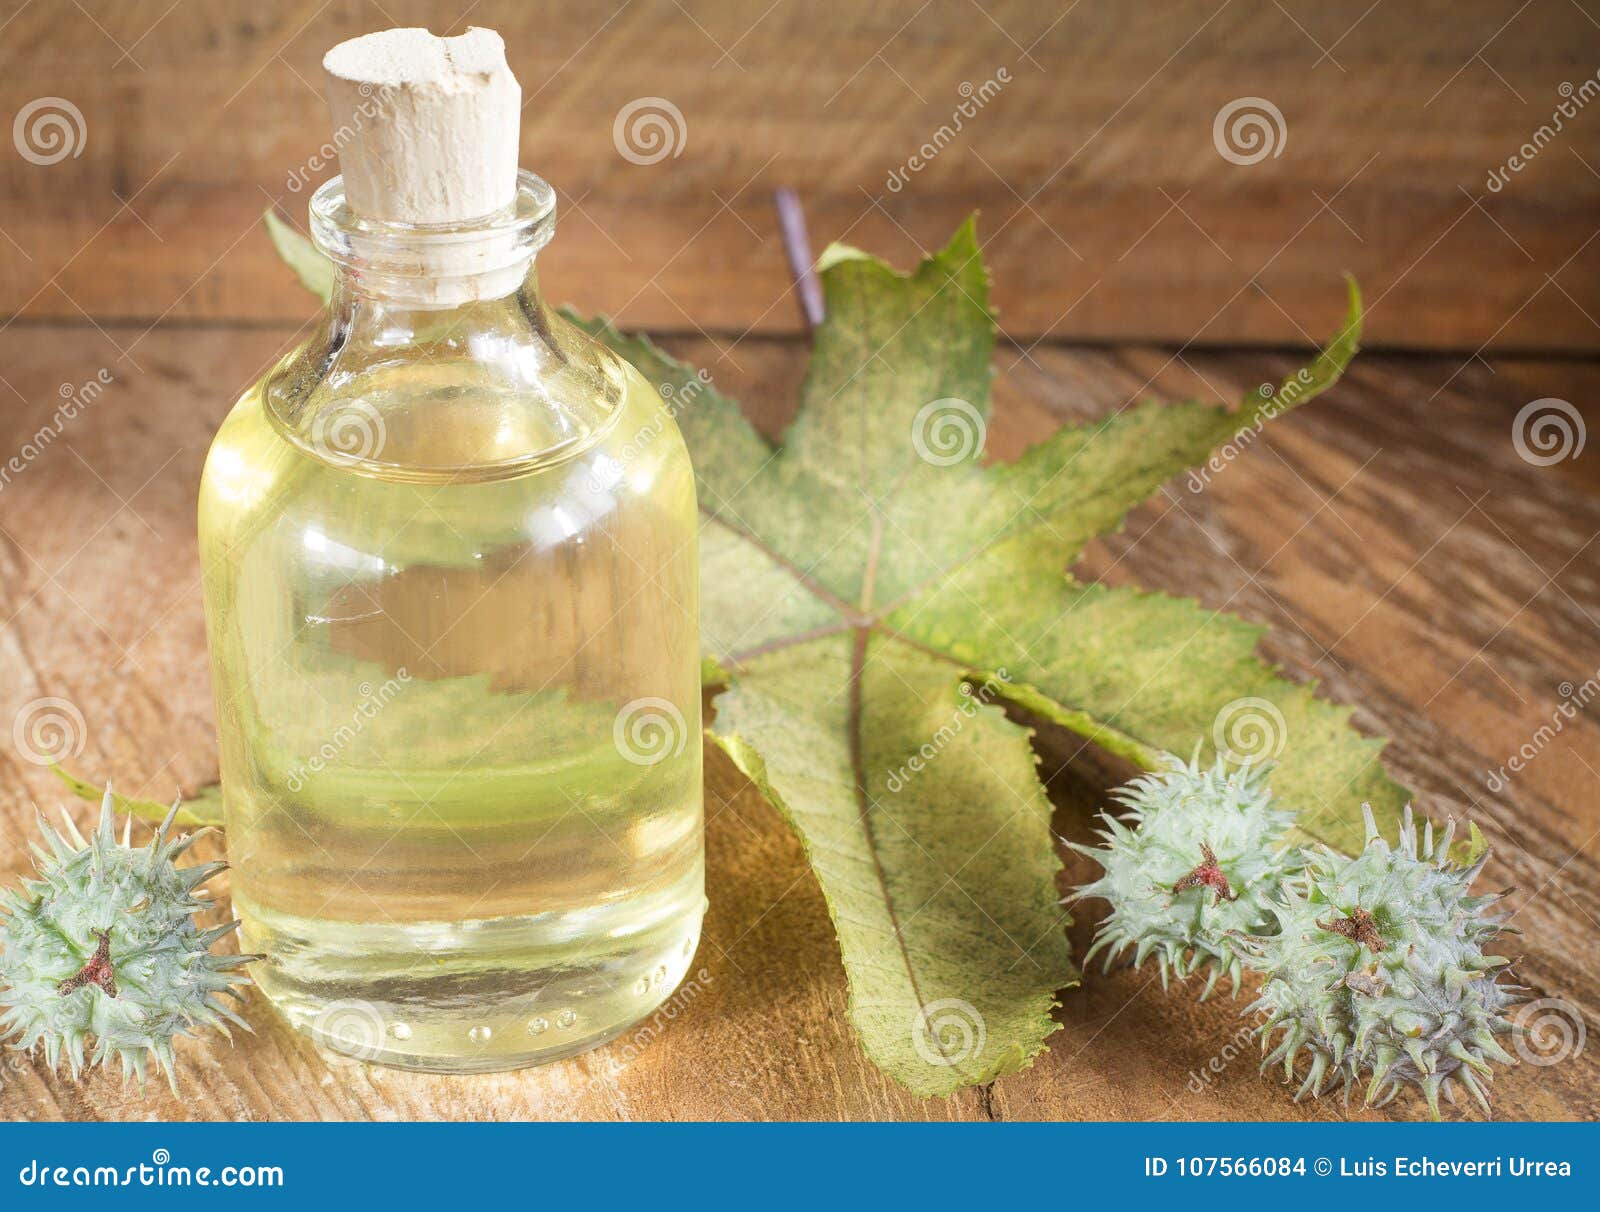 castor oil bottle with castor fruits, seeds and leaf - ricinus communis